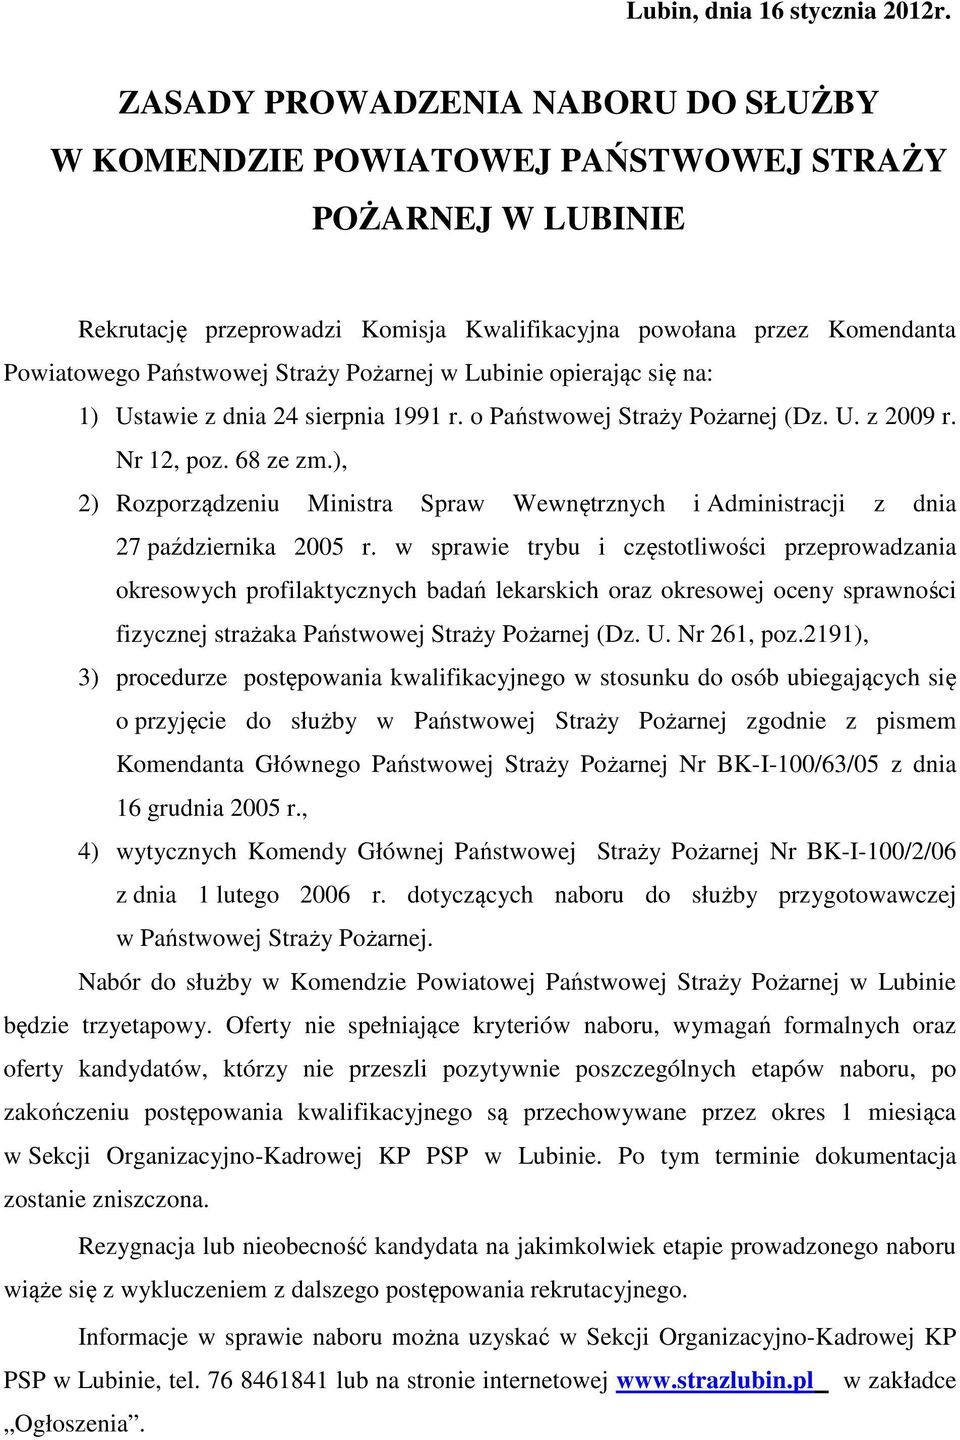 Pożarnej w Lubinie opierając się na: 1) Ustawie z dnia 24 sierpnia 1991 r. o Państwowej Straży Pożarnej (Dz. U. z 2009 r. Nr 12, poz. 68 ze zm.